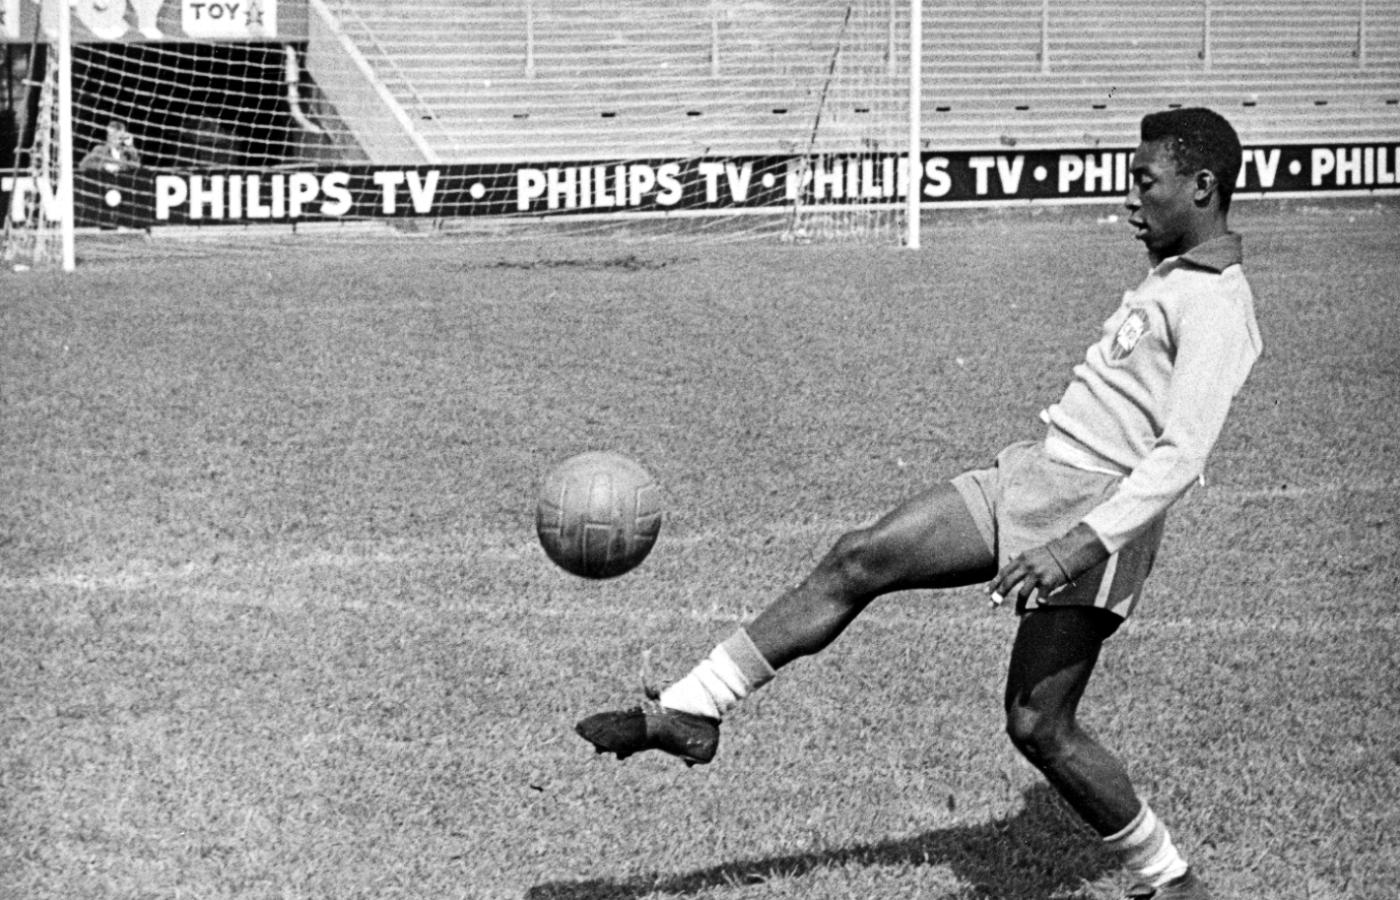 Pelé na stadionie Rasunda w Sztokholmie w czasie mistrzostw świata w 1958 r. W finale tego mundialu Brazylia pokonała Szwecję 5:2, a Pelé strzelił w nim dwa gole.